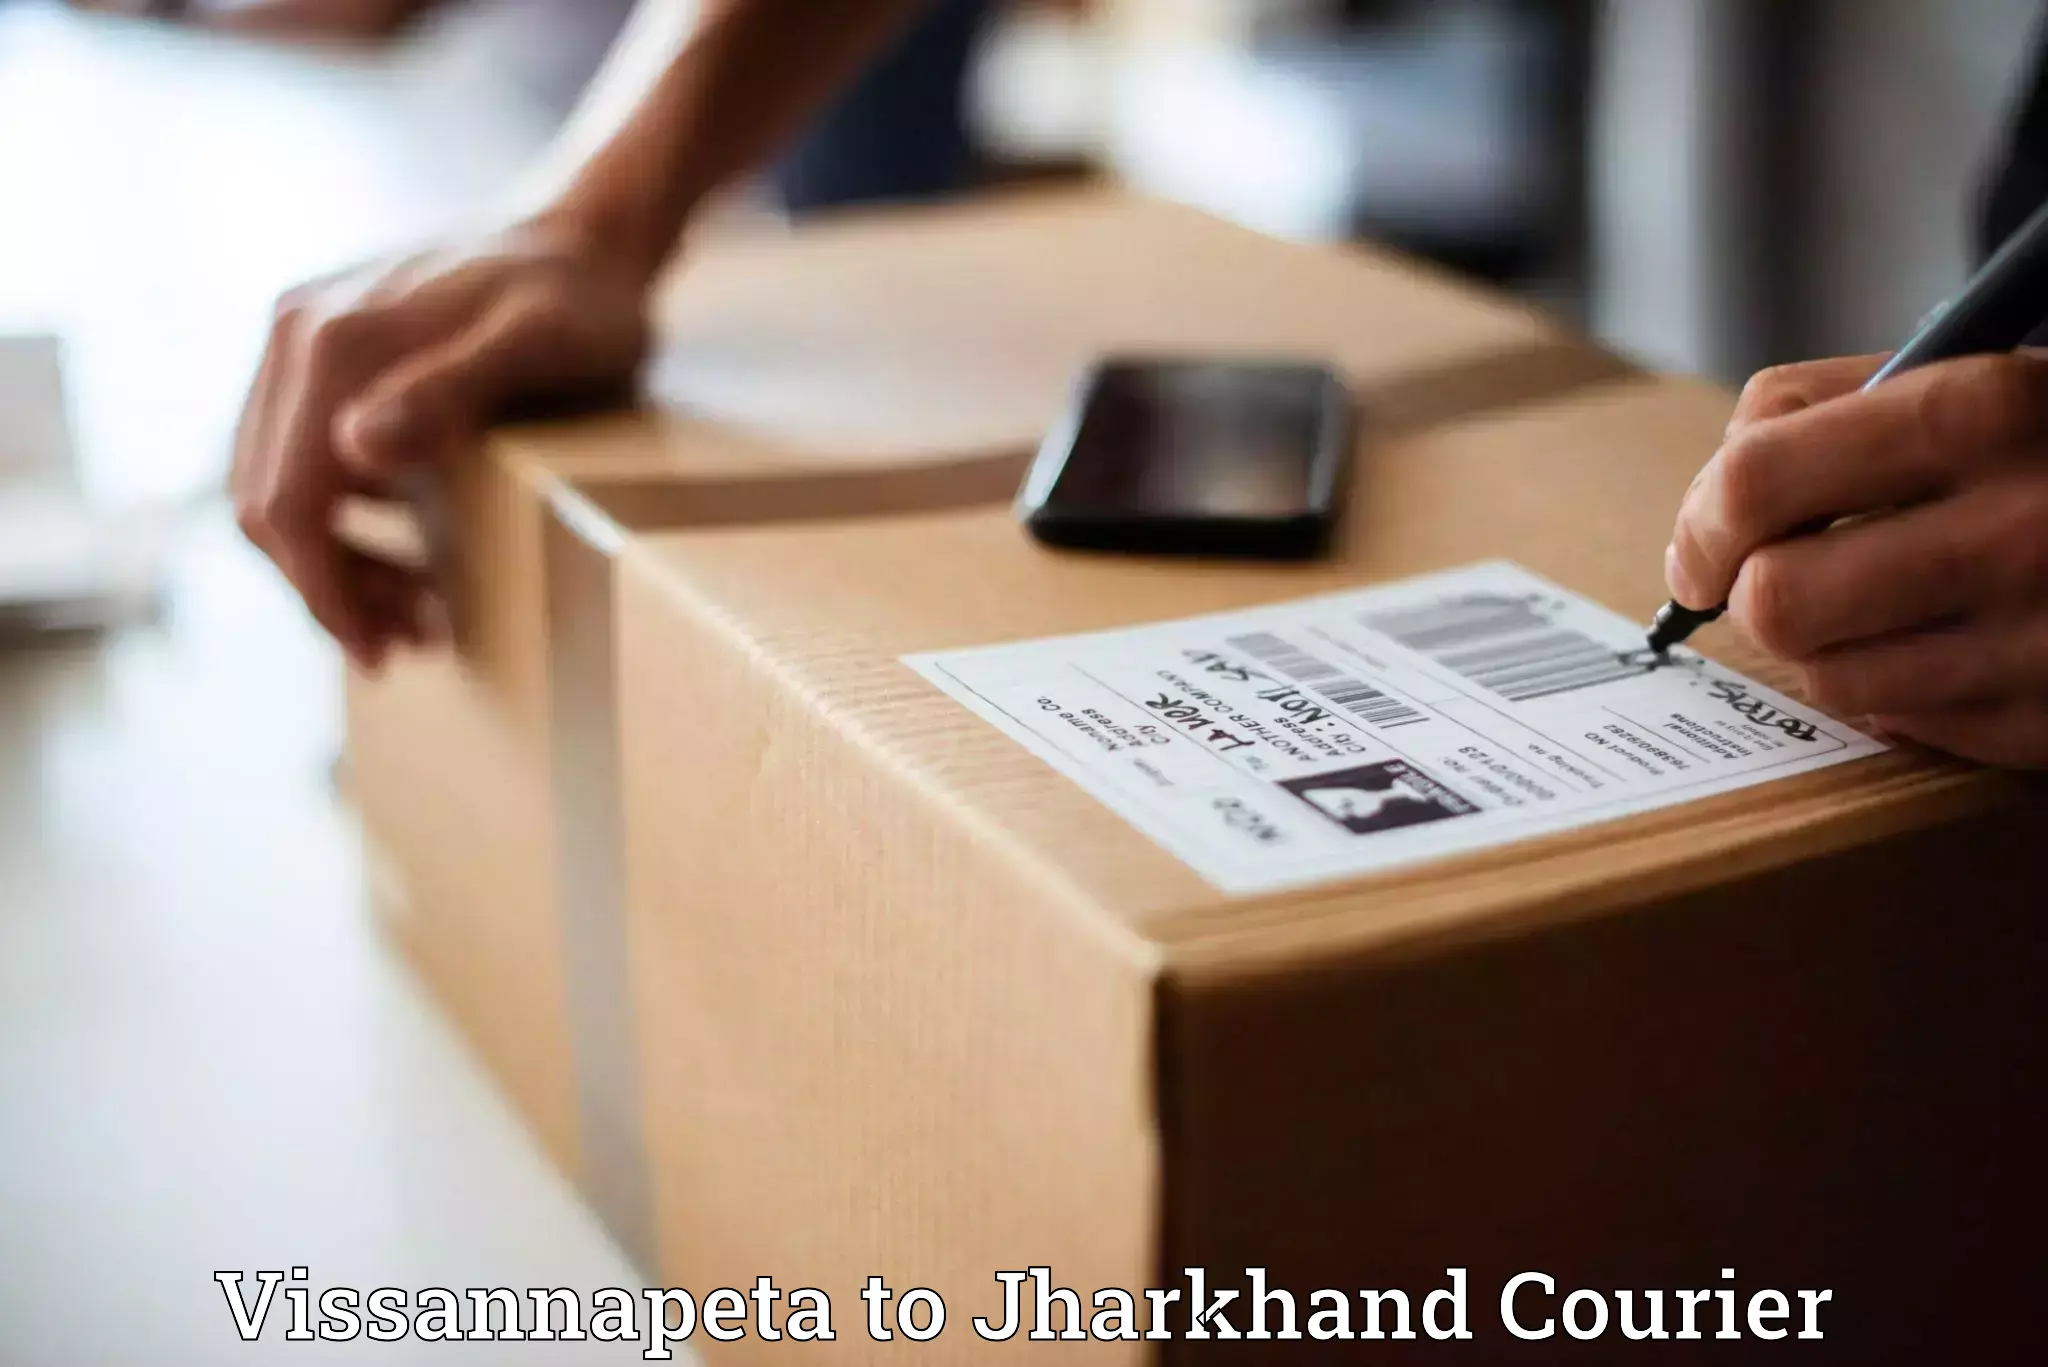 Fastest parcel delivery Vissannapeta to Daltonganj